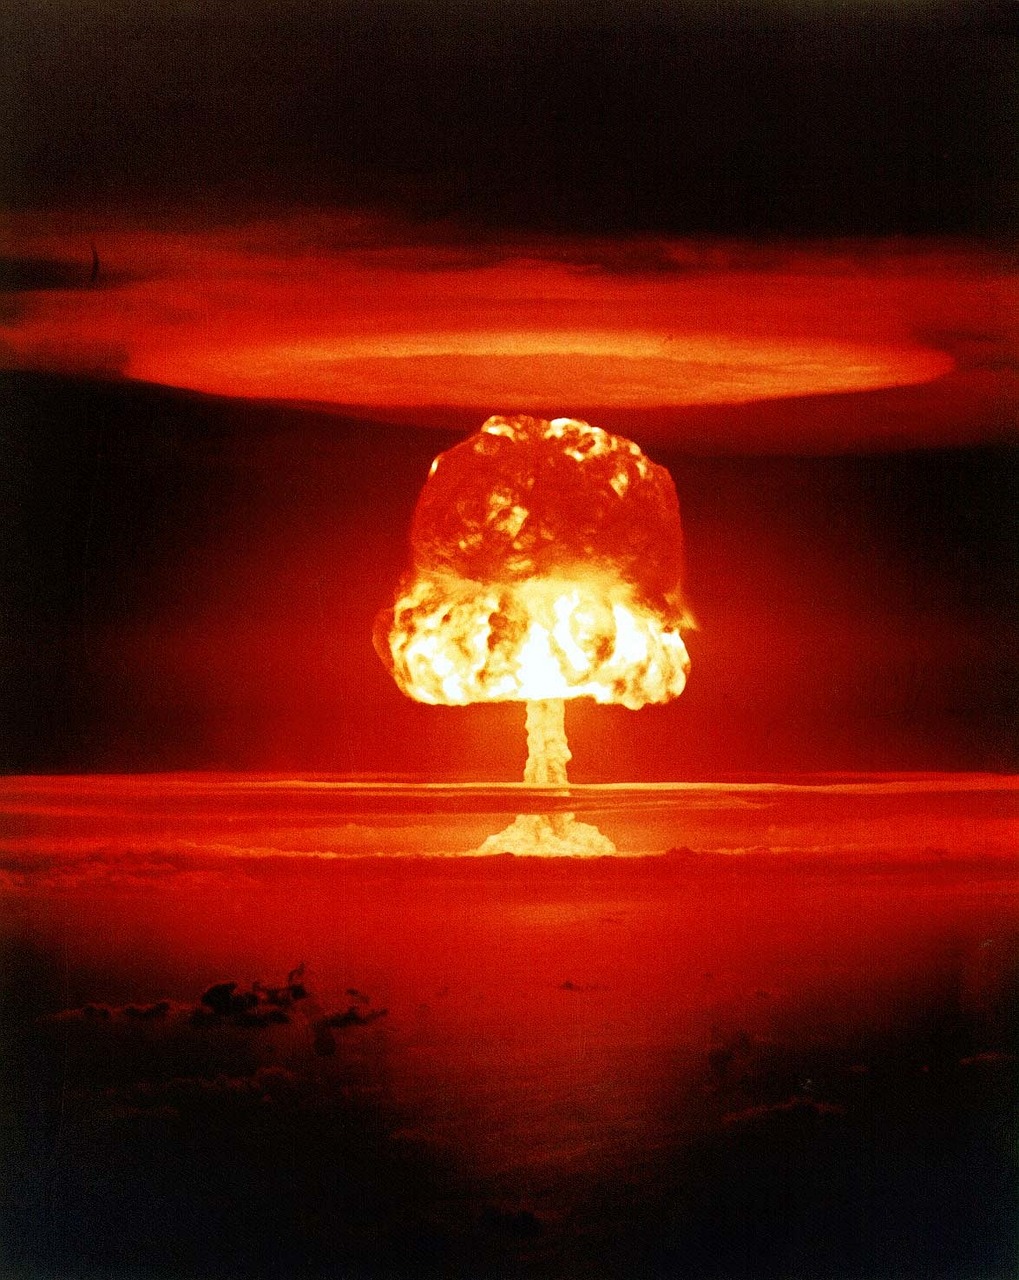 atomic bomb, mushroom cloud, explosion